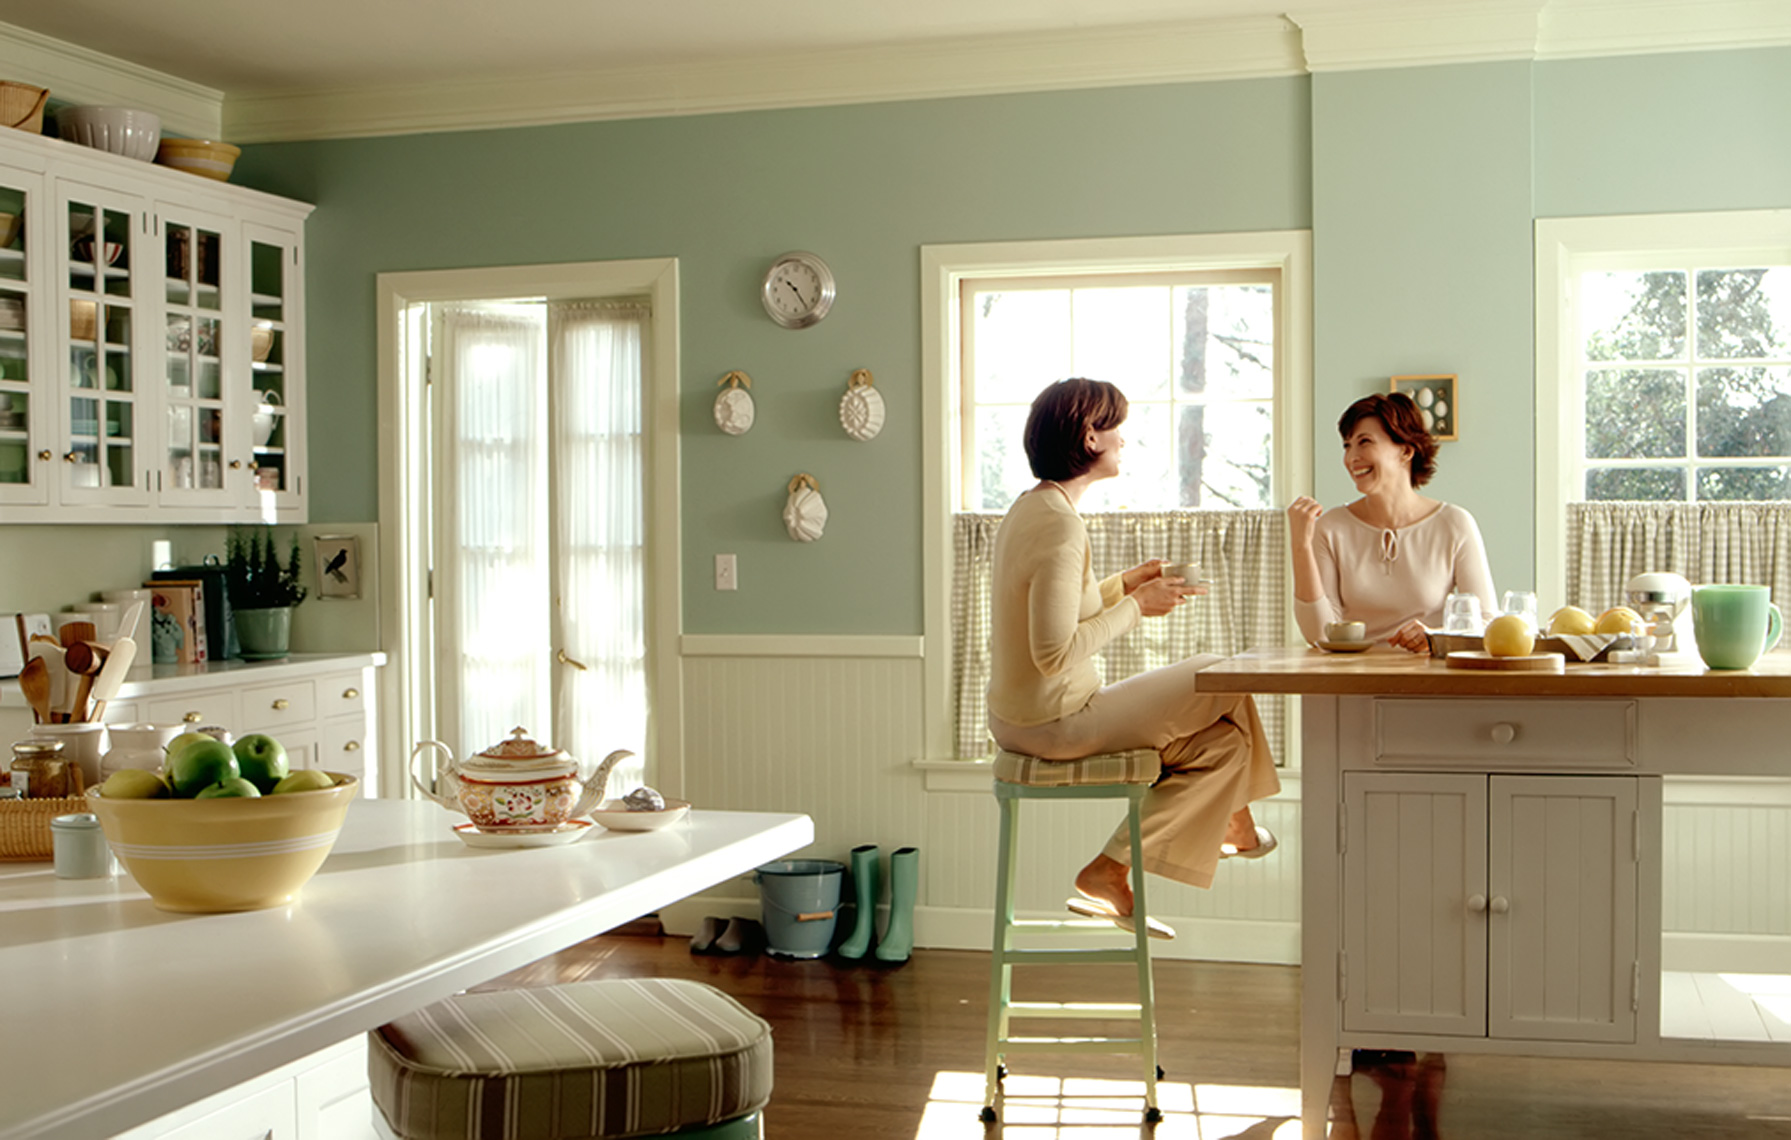 women in kitchen talking